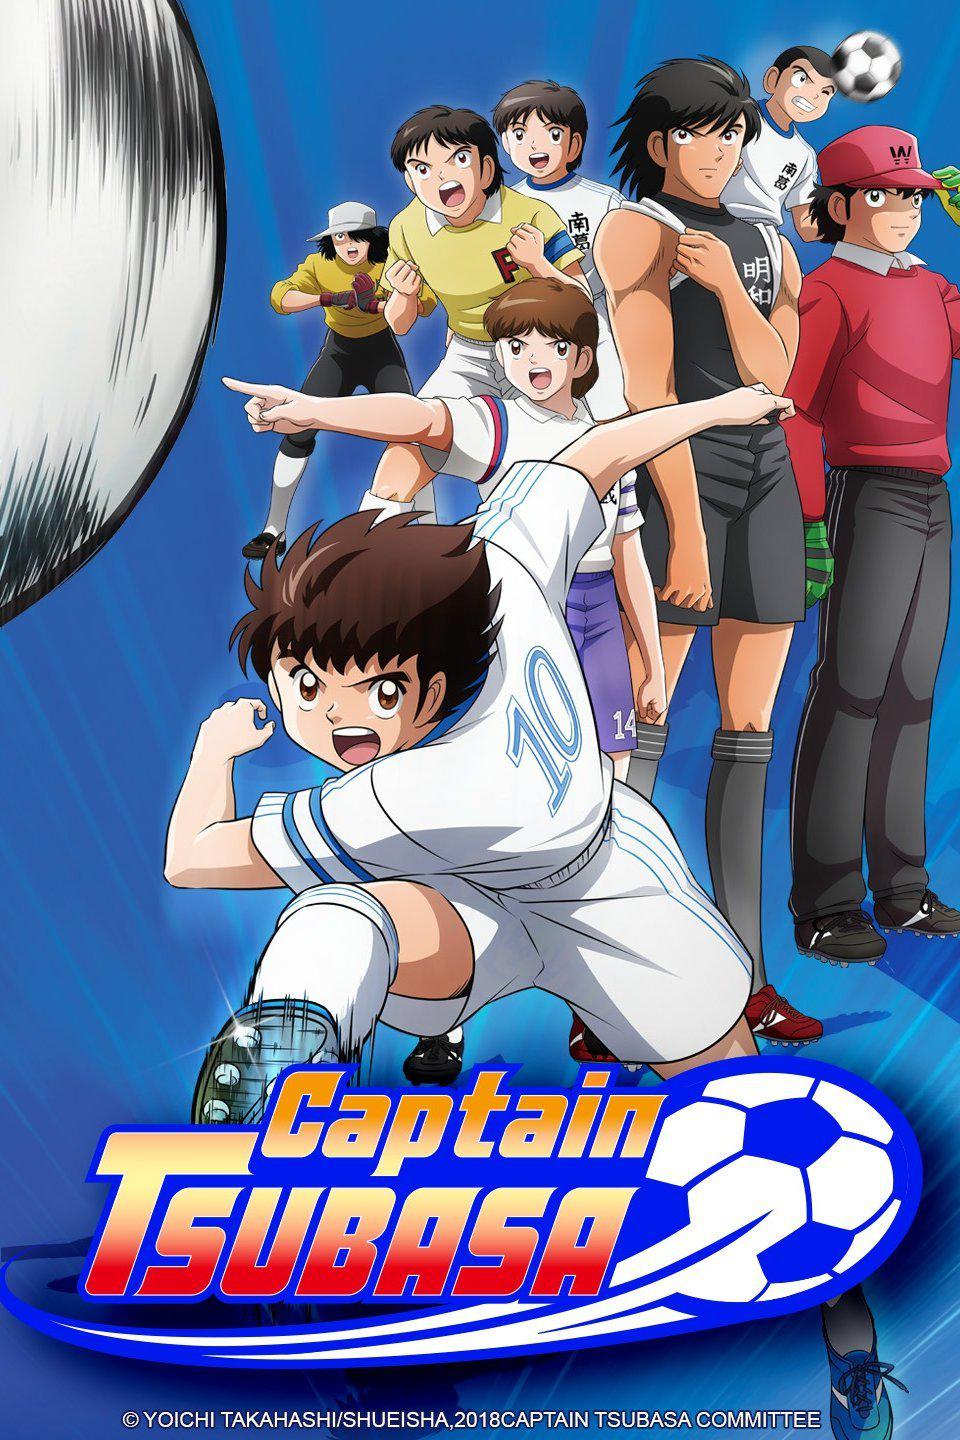 TV ratings for Captain Tsubasa (キャプテン翼) in Tailandia. TV Tokyo TV series